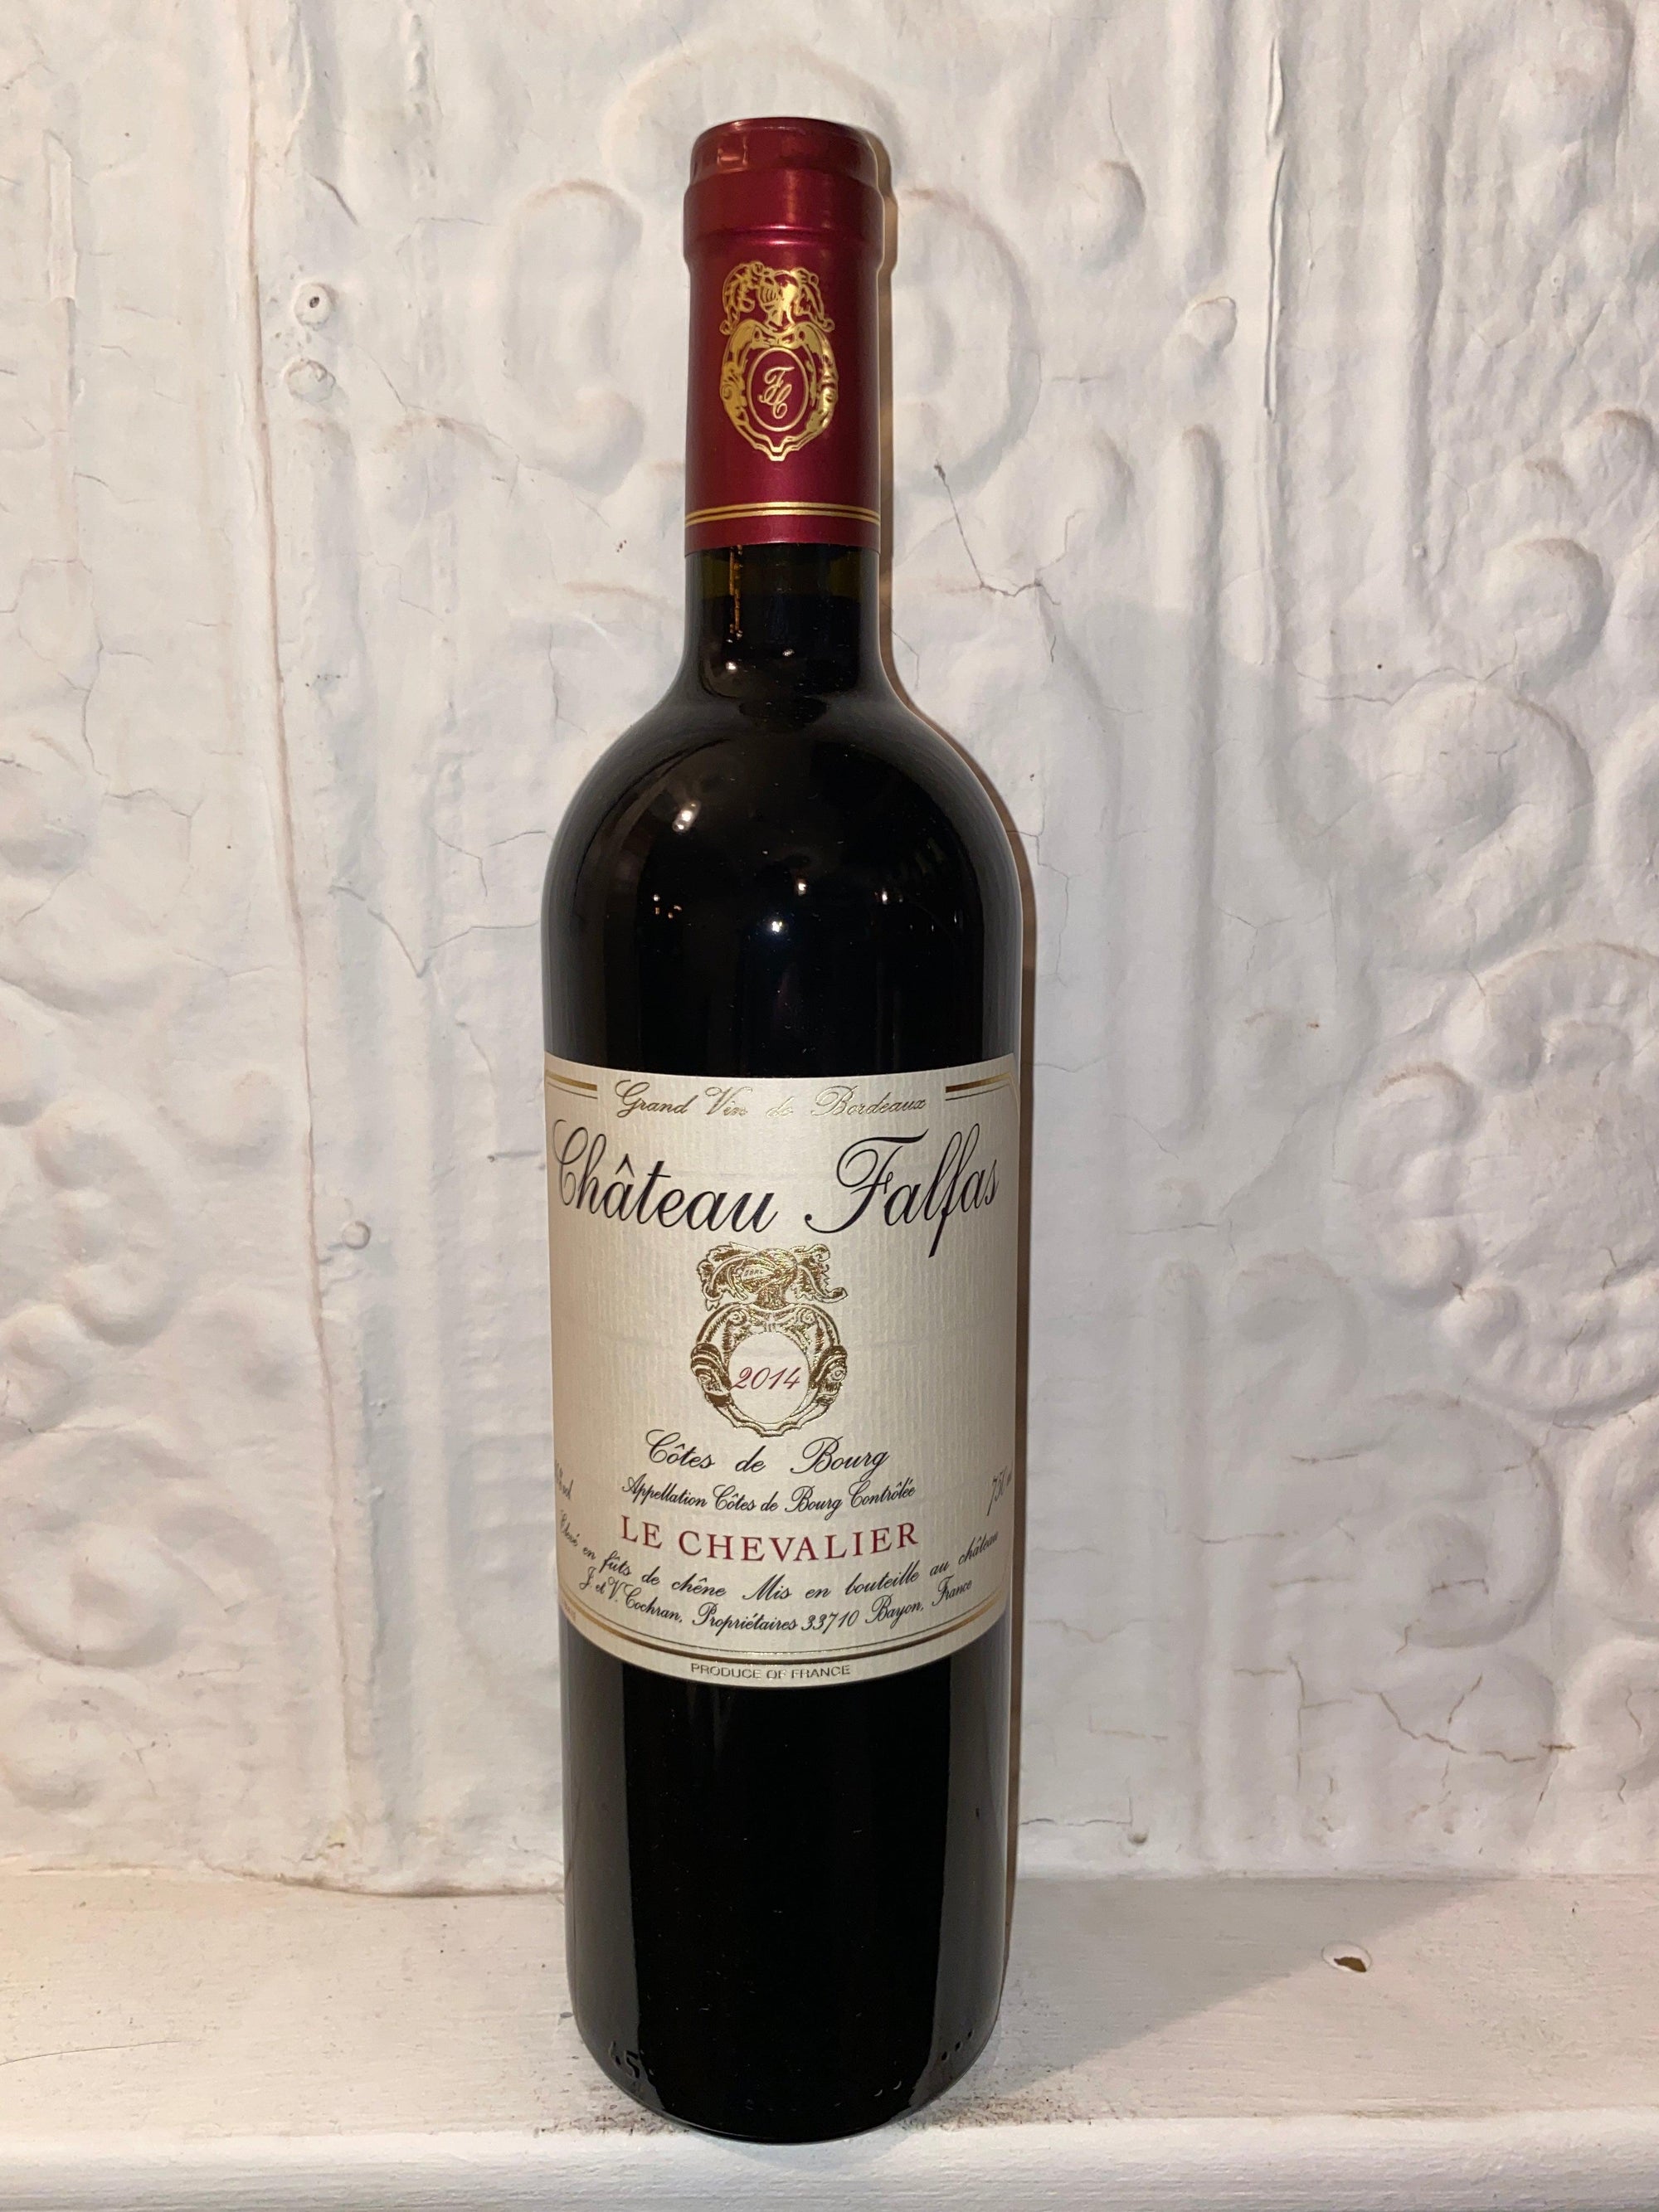 Le Chevalier, Chateau Falfas 2014 (Bordeaux, France)-Wine-Bibber & Bell